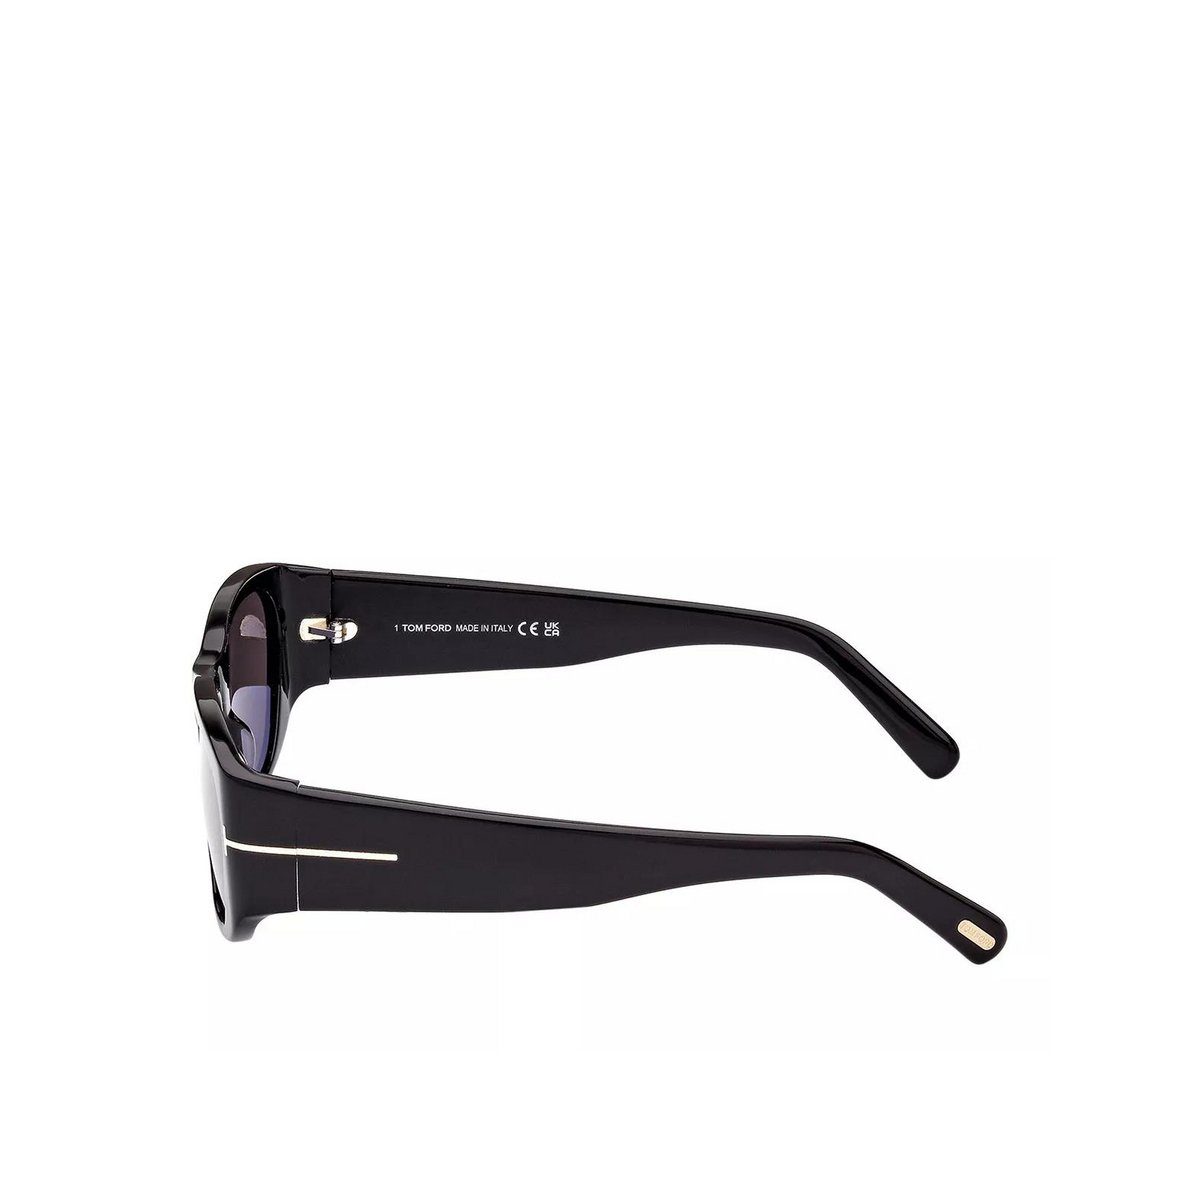 Tom Ford Sonnenbrille schwarz (1-St)